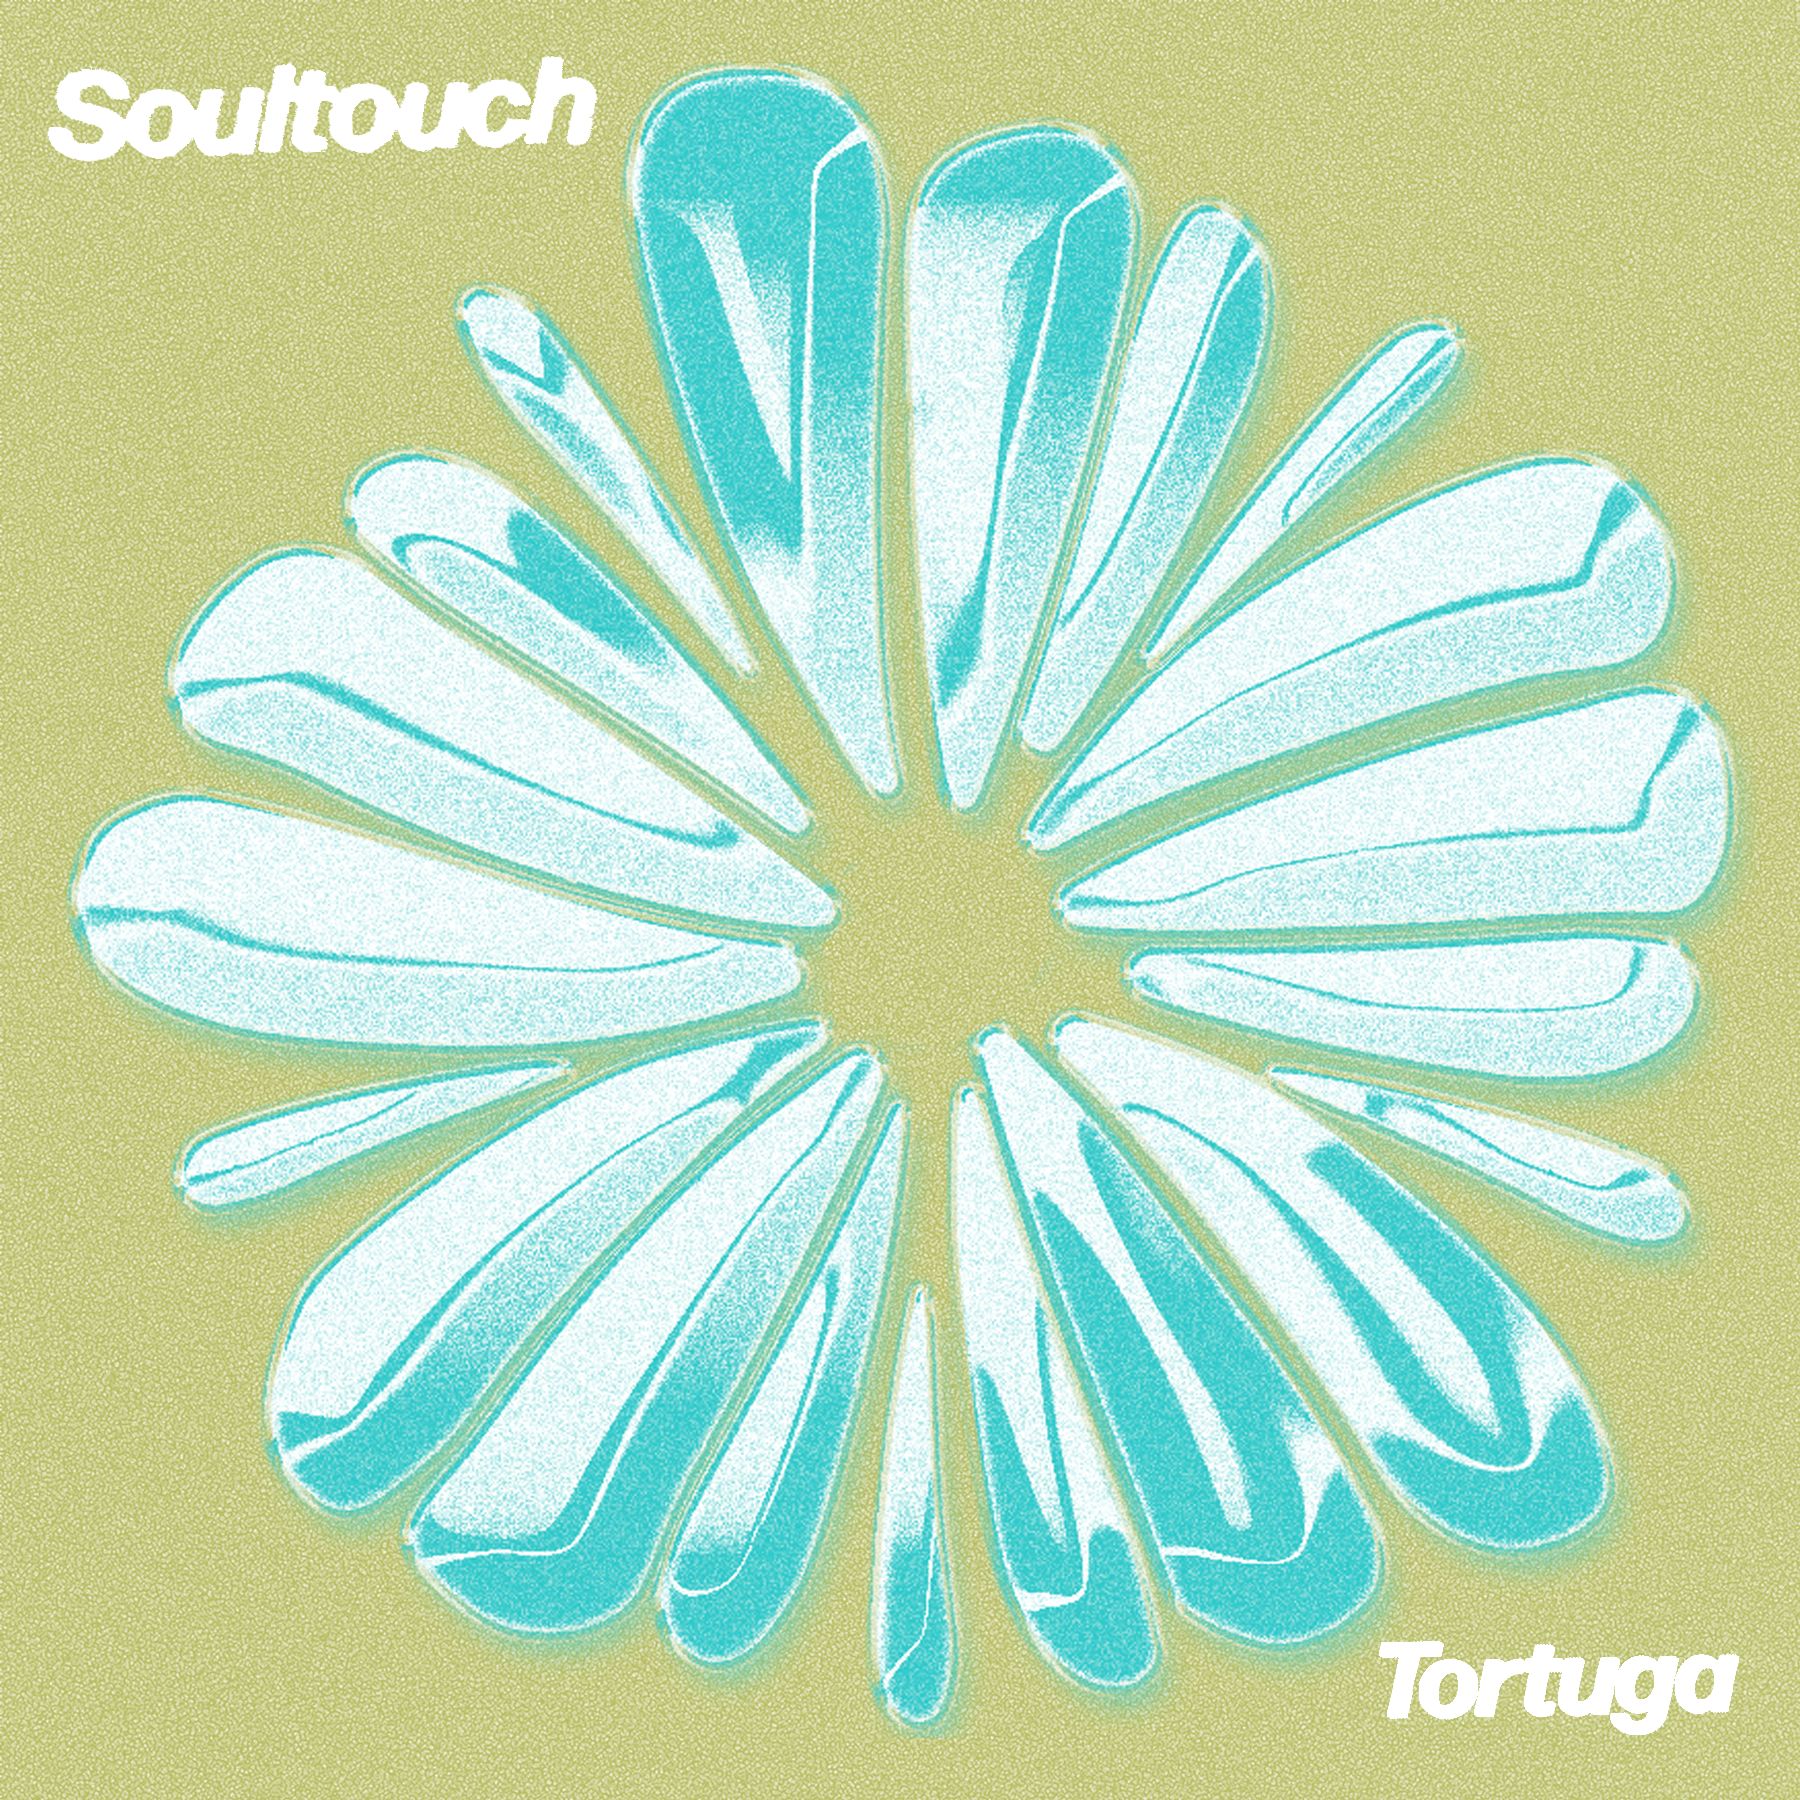 Ներբեռնե PREMIERE : Tortuga - Soultouch